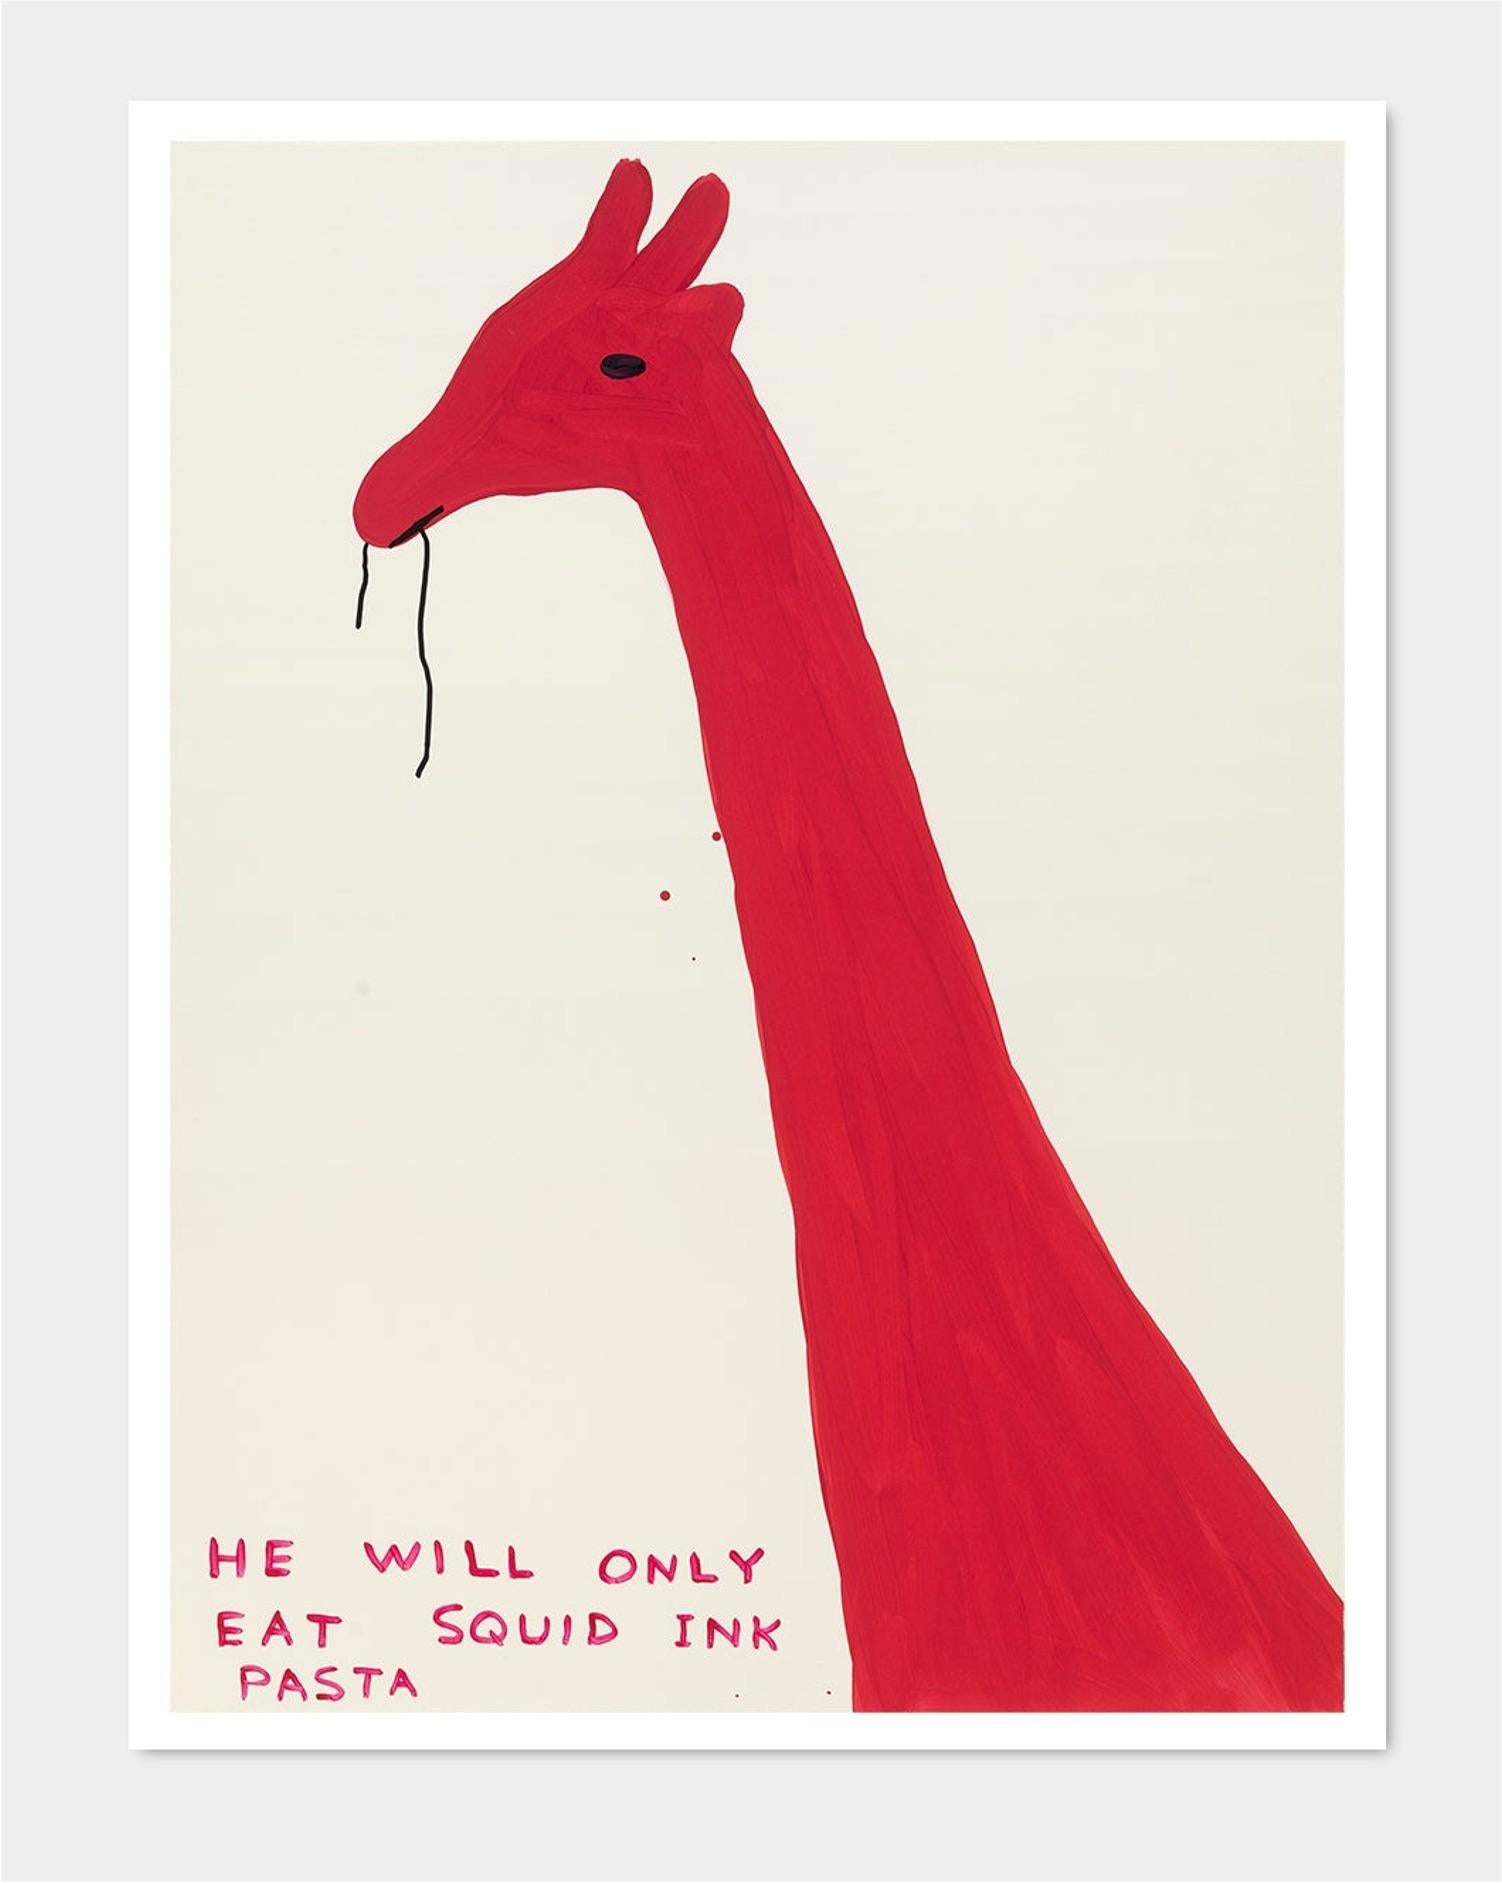 David Shrigley
Sans titre (Il ne mangera que des pâtes à l'encre de seiche) (2019)
80 x 60 cm
Lithographie offset
Imprimé sur papier Munken Lynx 200g